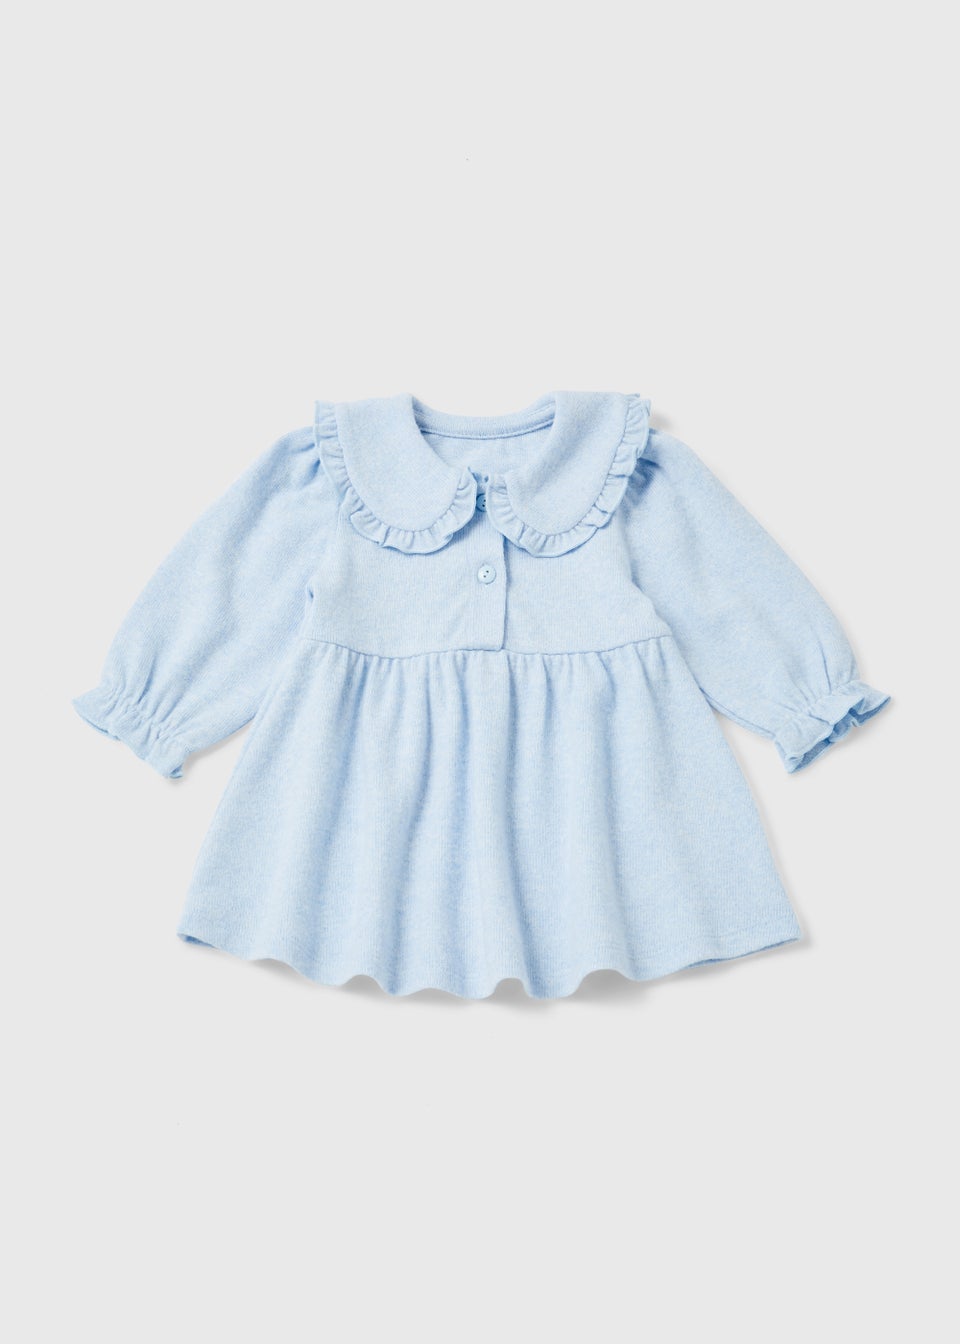 Baby Blue Peter Pan Collar Dress (Newborn-23mths)